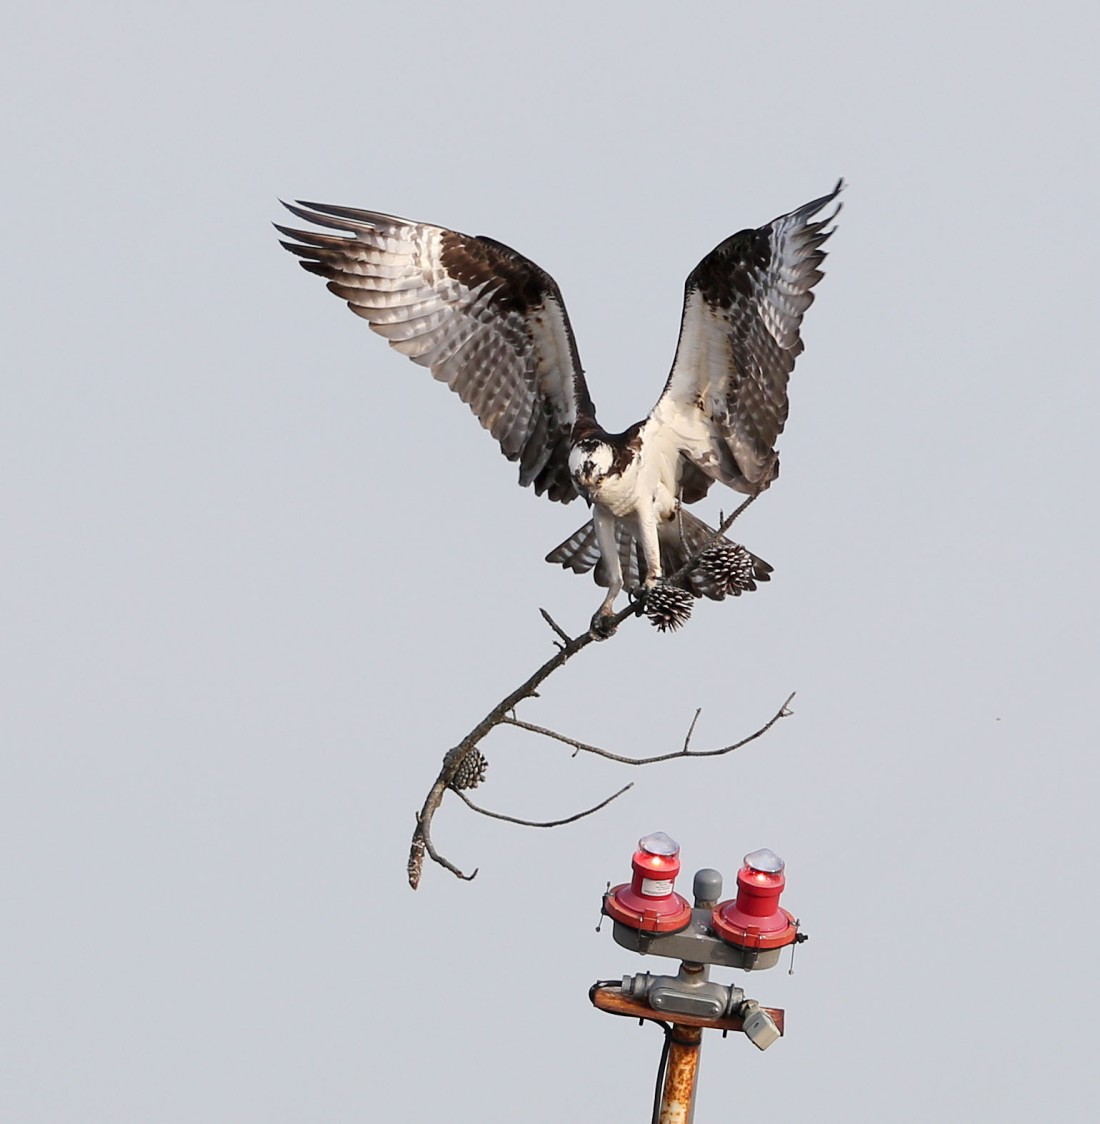 Osprey delivering nesting material